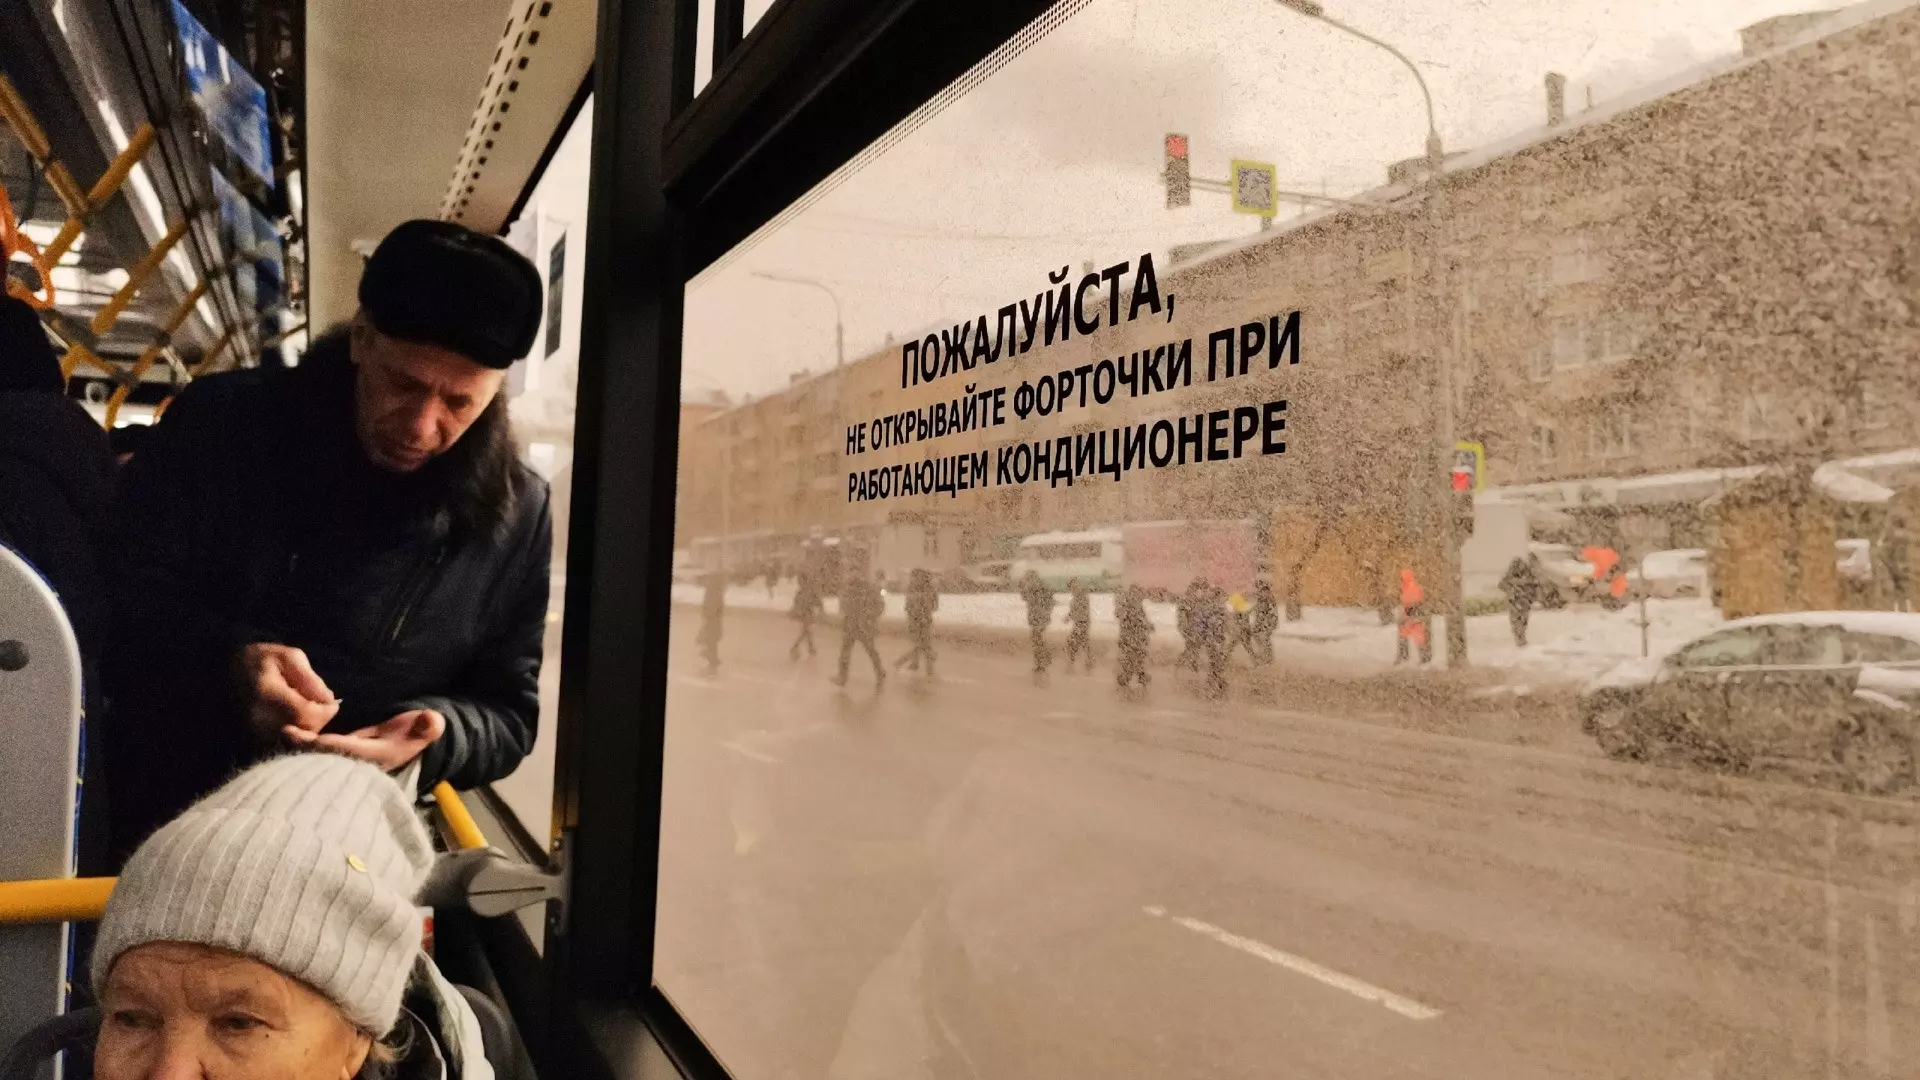 Два троллейбусных маршрута в Челябинске изменятся, один не будет ходить 10 дней